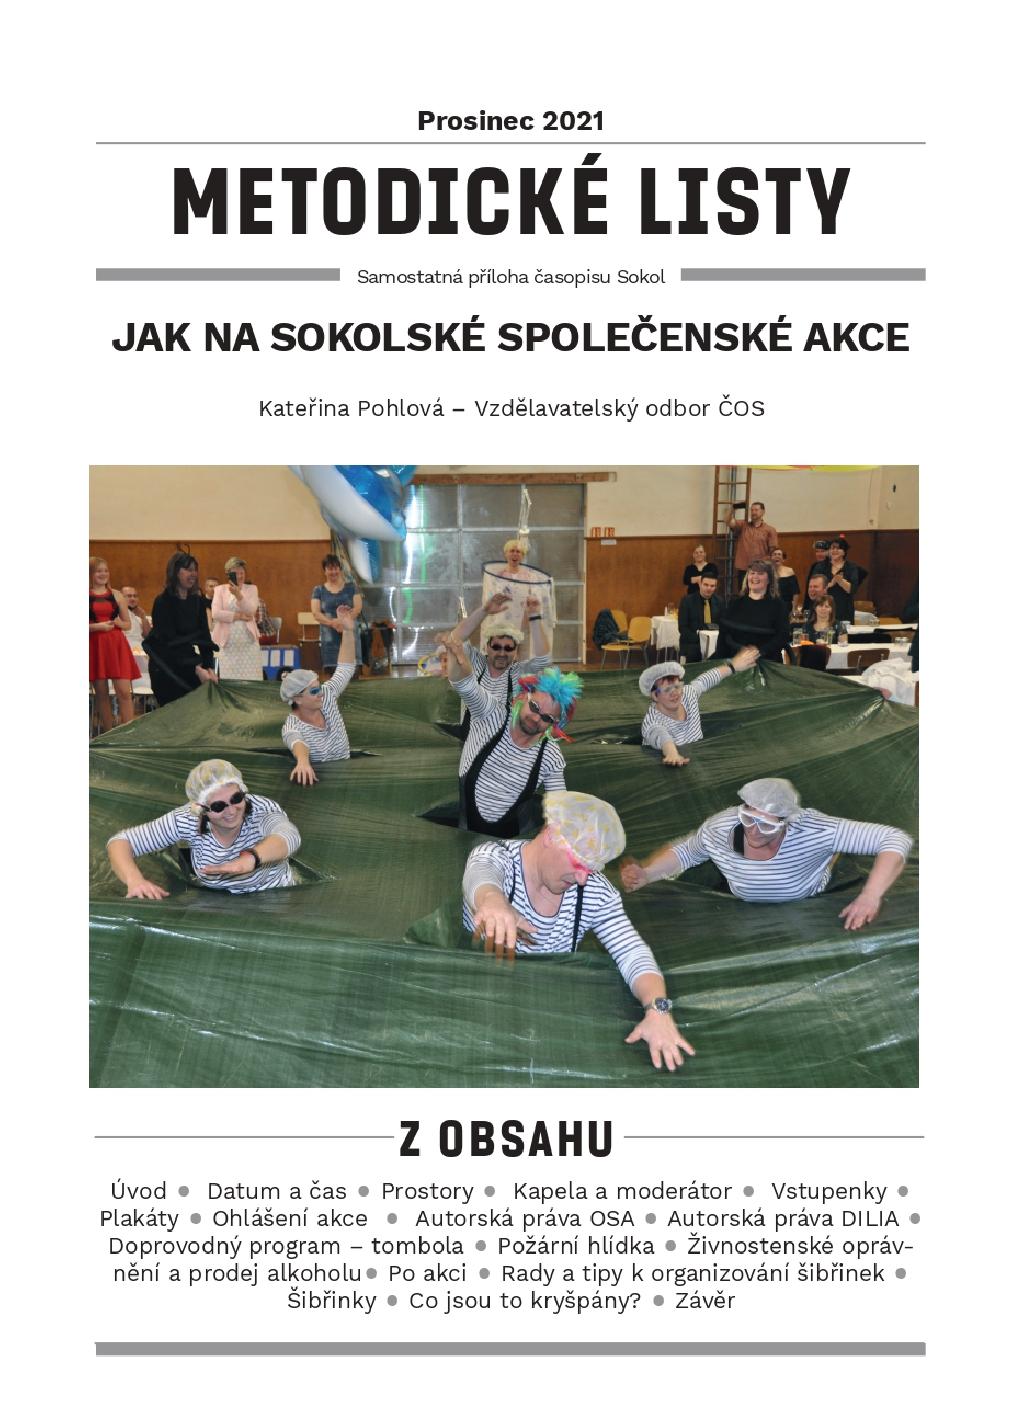 Metodické listy cover prosinec 2021